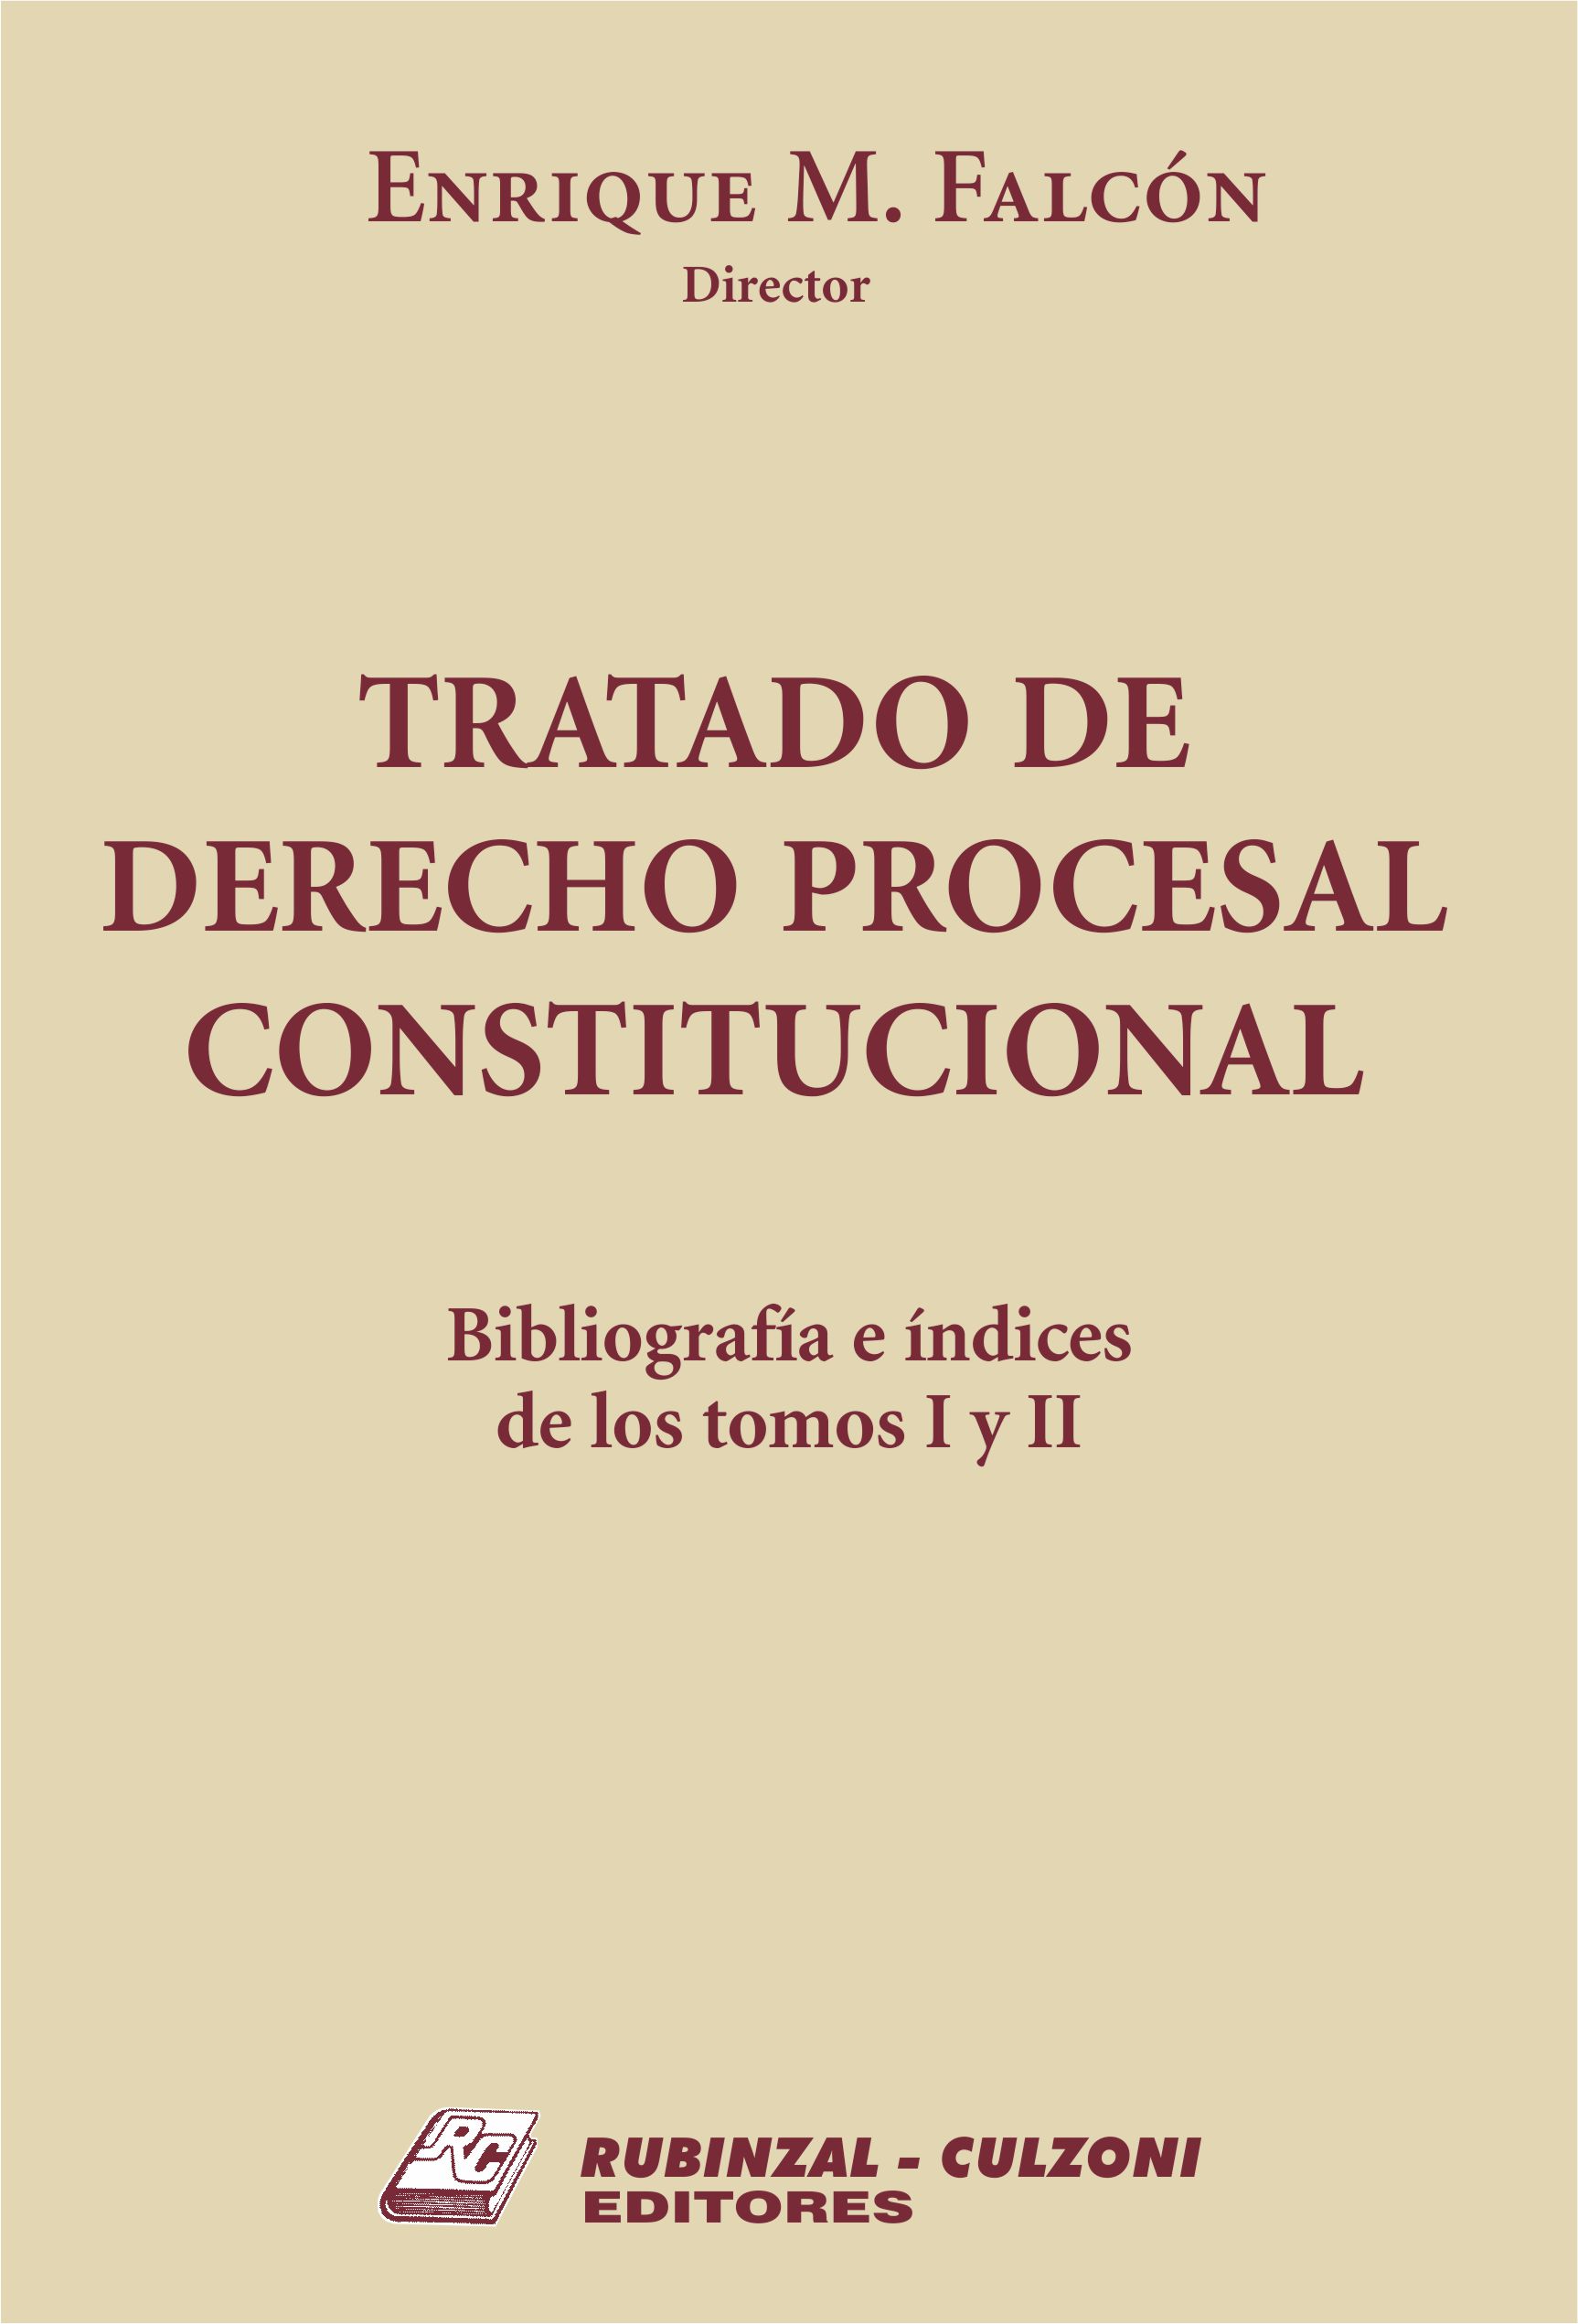 Tratado de Derecho Procesal Constitucional. - Bibliografía e índices de los tomos I y II.